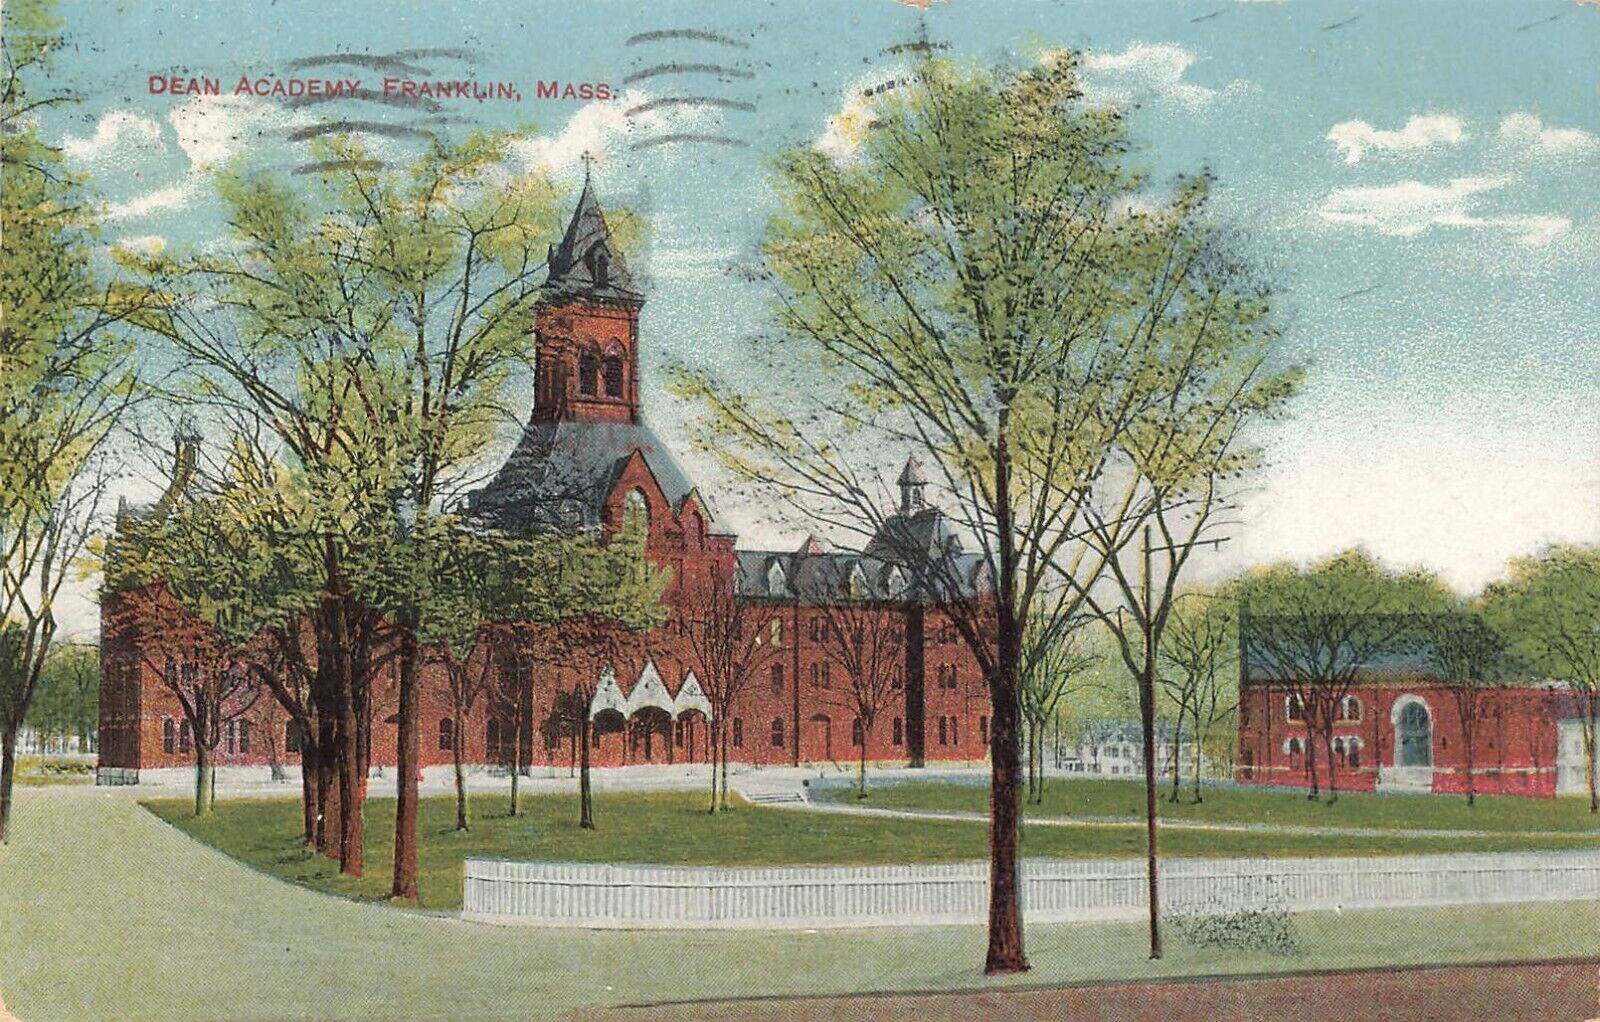 Postcard - Franklin, Massachusetts, Dean Academy - 1913